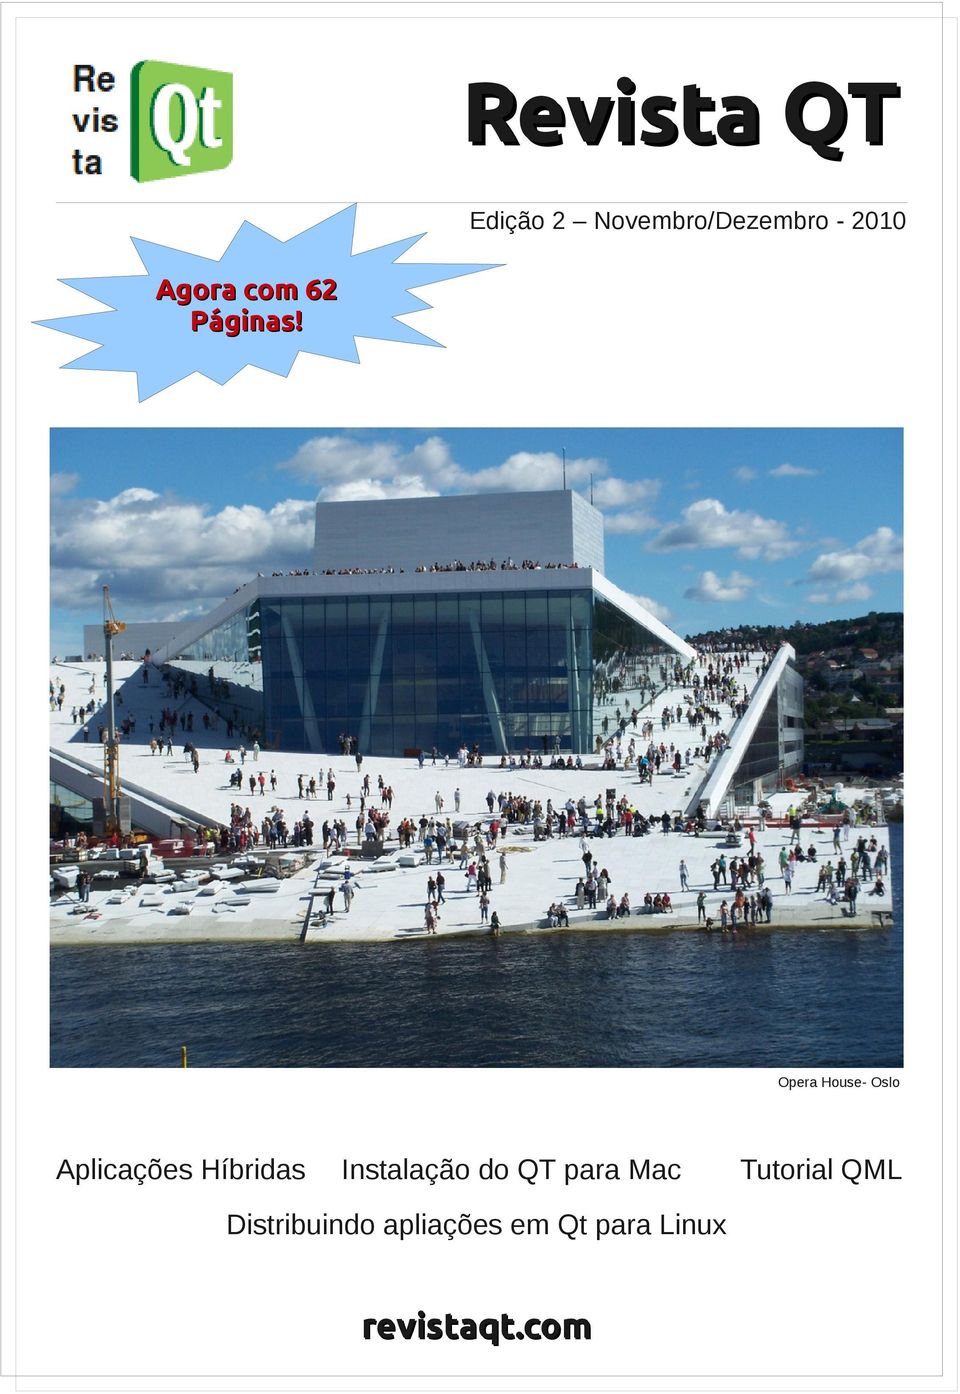 Opera House- Oslo Aplicações Híbridas Instalação